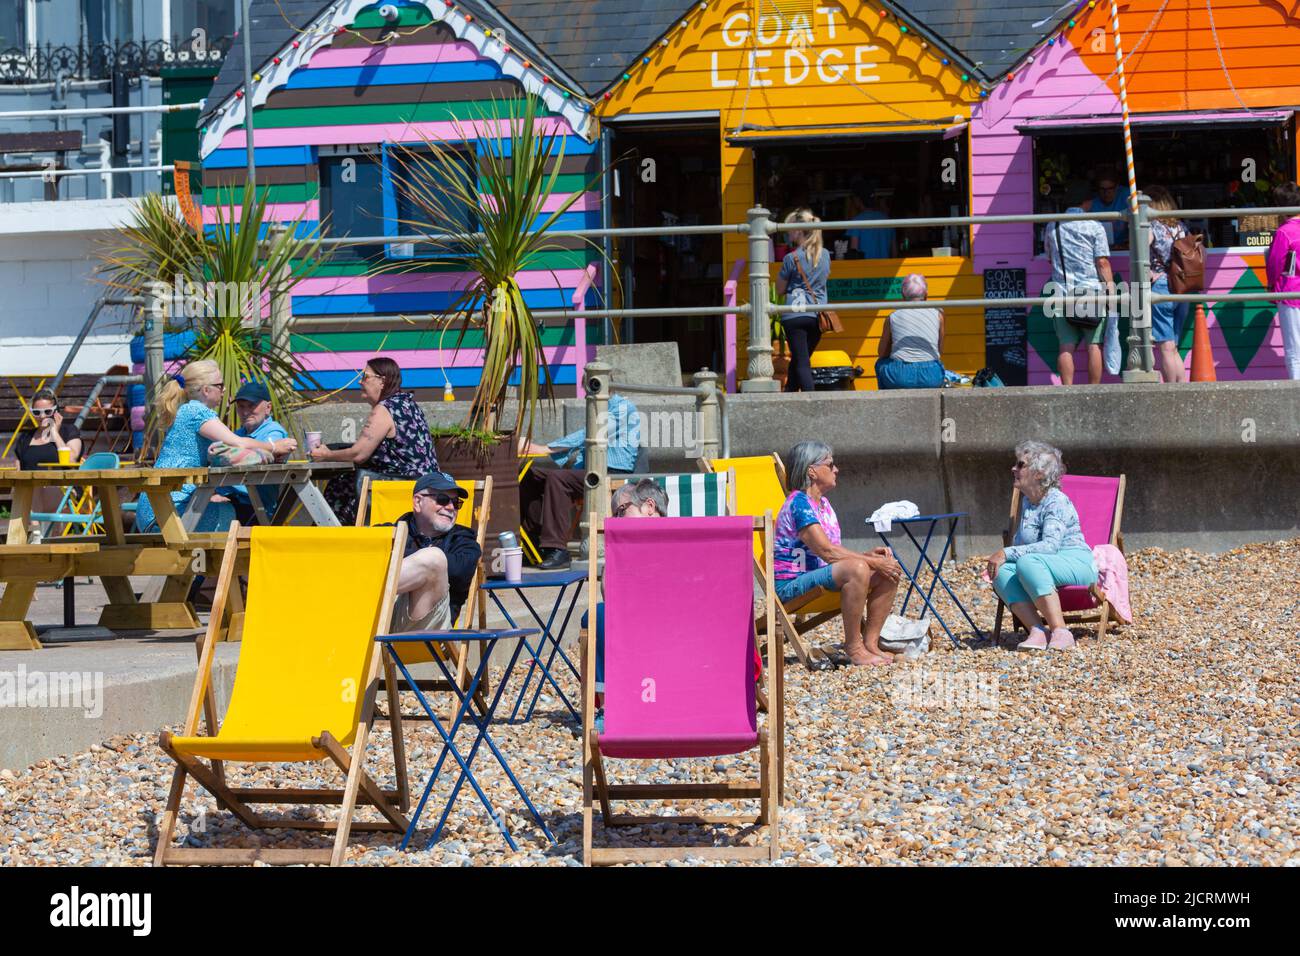 Capra Ledge Cafe sul fronte spiaggia di Hastings, St Leonards, hastings, East sussex, regno unito Foto Stock